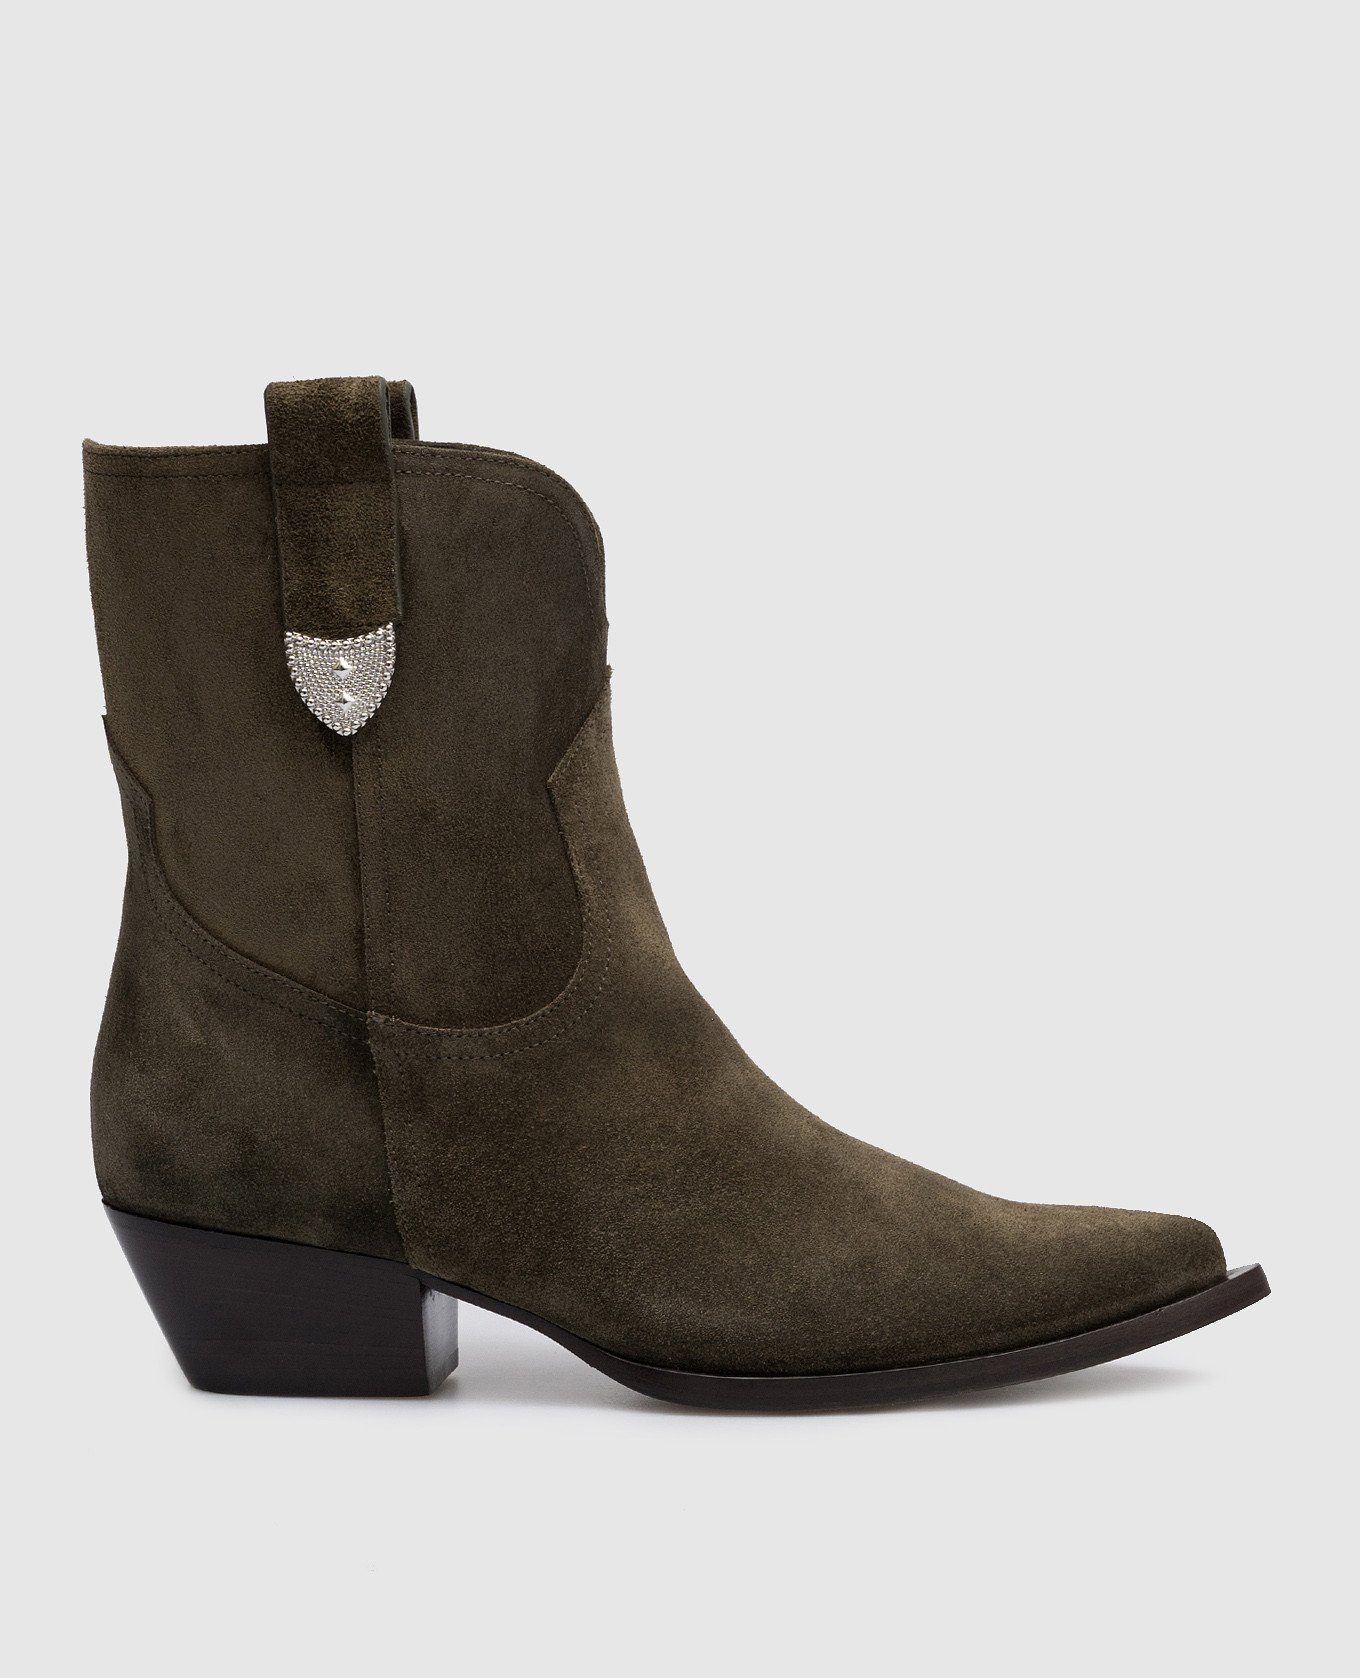 Paris khaki suede boots with metallic details